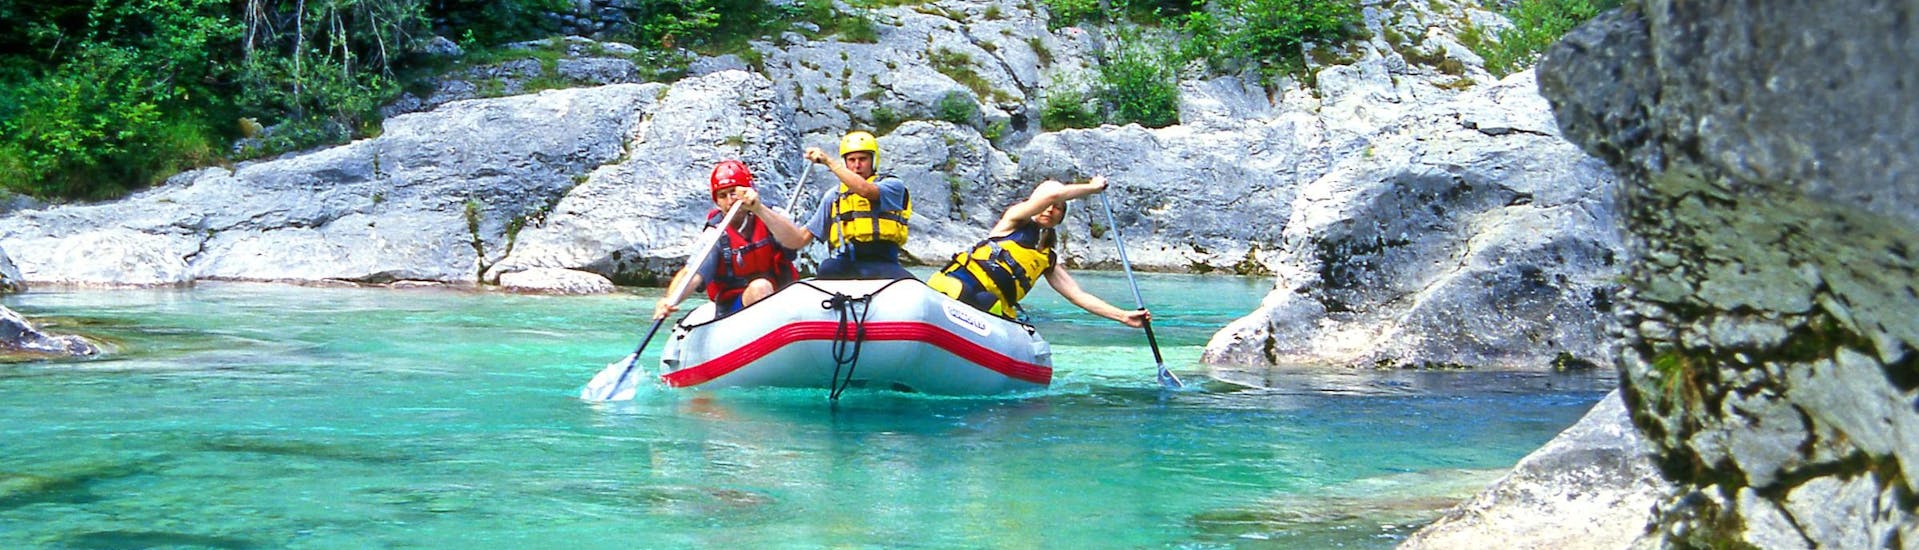 Un groupe de jeunes gens s'amuse lors d'une activité en eau vive dans la destination de rafting et canyoning Fratarca. 